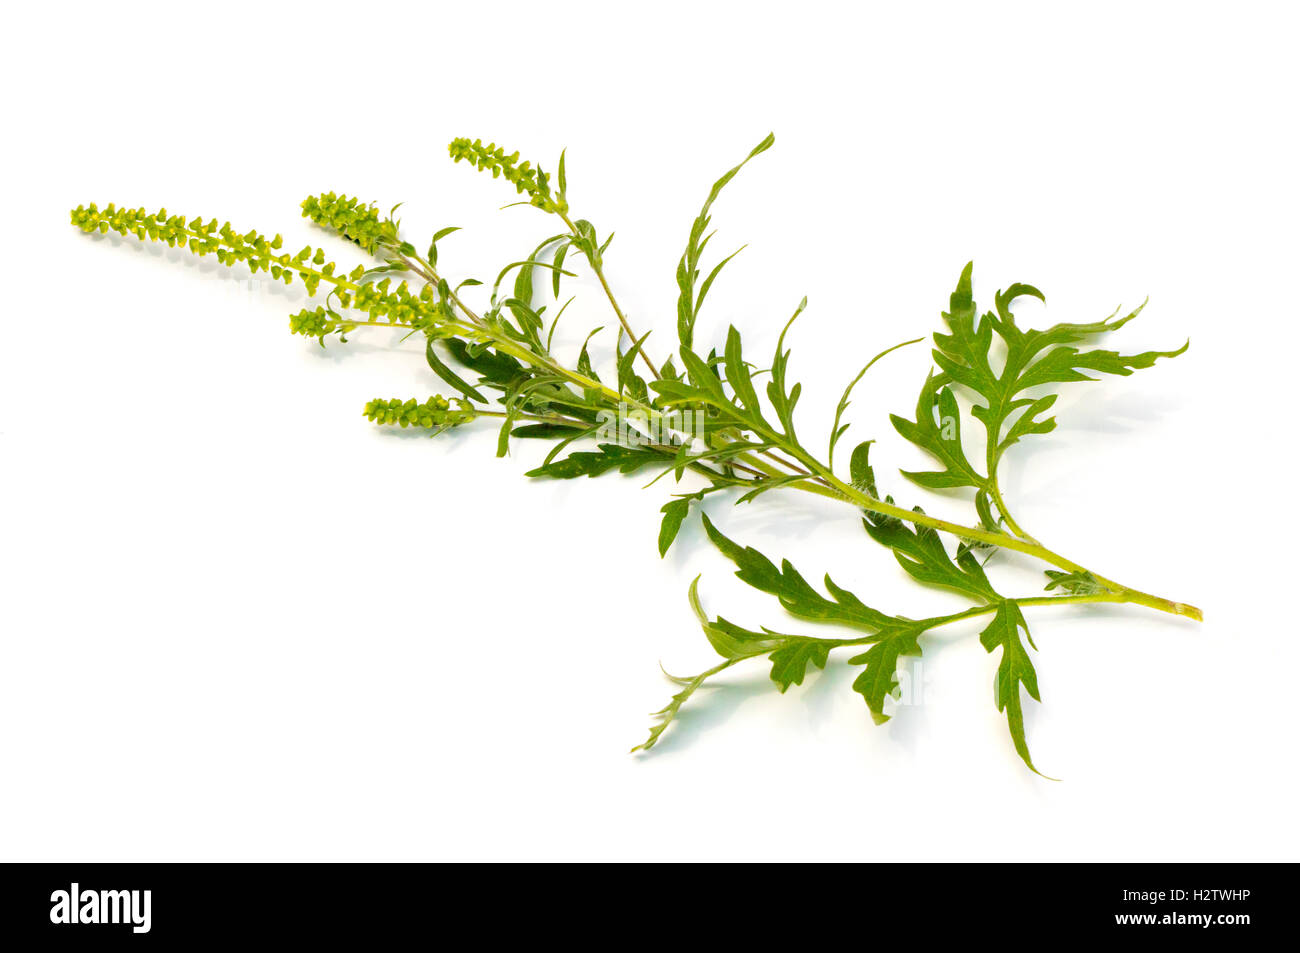 Common Ragweed (Ambrosia artemisiifolia) on a white background Stock Photo